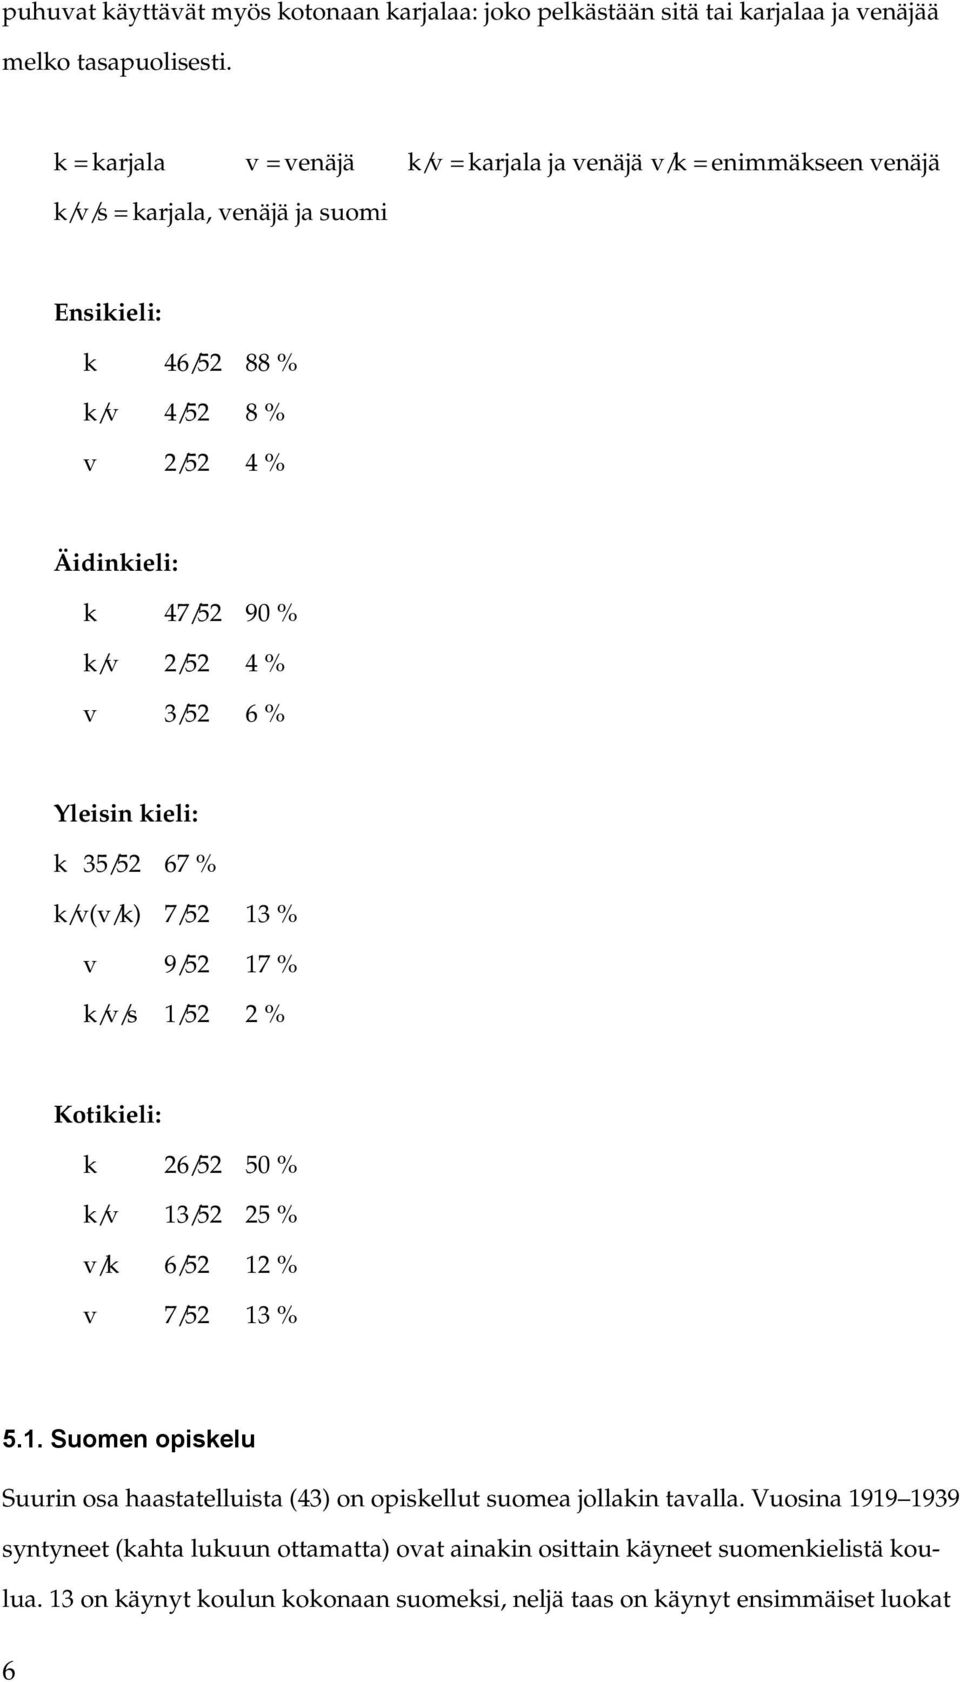 2/52 4 % v 3/52 6 % Yleisin kieli: k 35/52 67 % k/v(v/k) 7/52 13 % v 9/52 17 % k/v/s 1/52 2 % Kotikieli: k 26/52 50 % k/v 13/52 25 % v/k 6/52 12 % v 7/52 13 % 5.1. Suomen opiskelu Suurin osa haastatelluista (43) on opiskellut suomea jollakin tavalla.